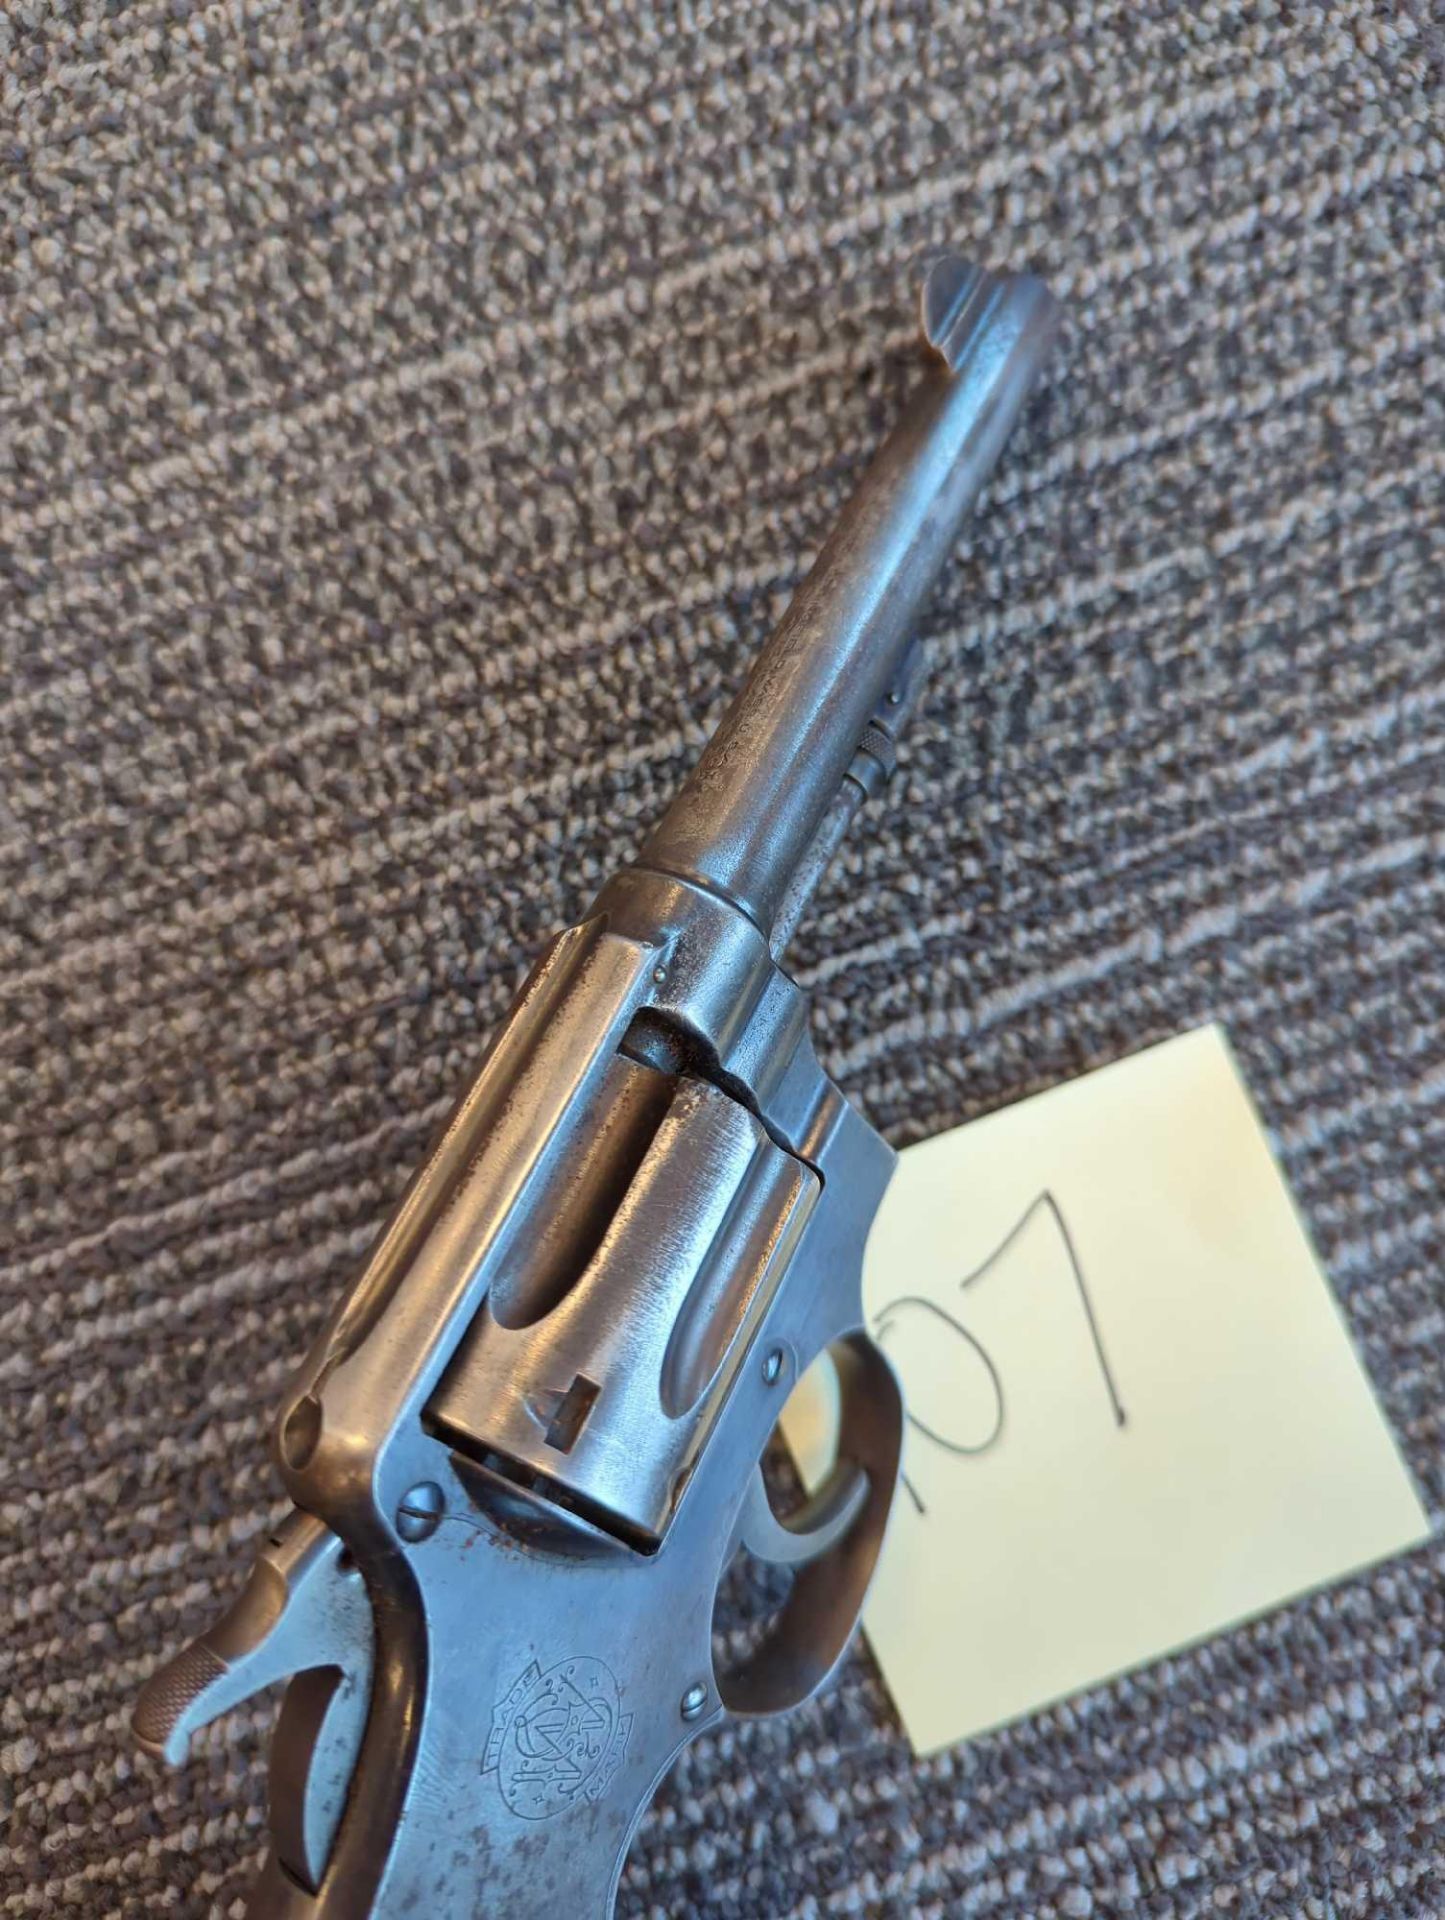 S&W Police Service Revolver - Image 5 of 9